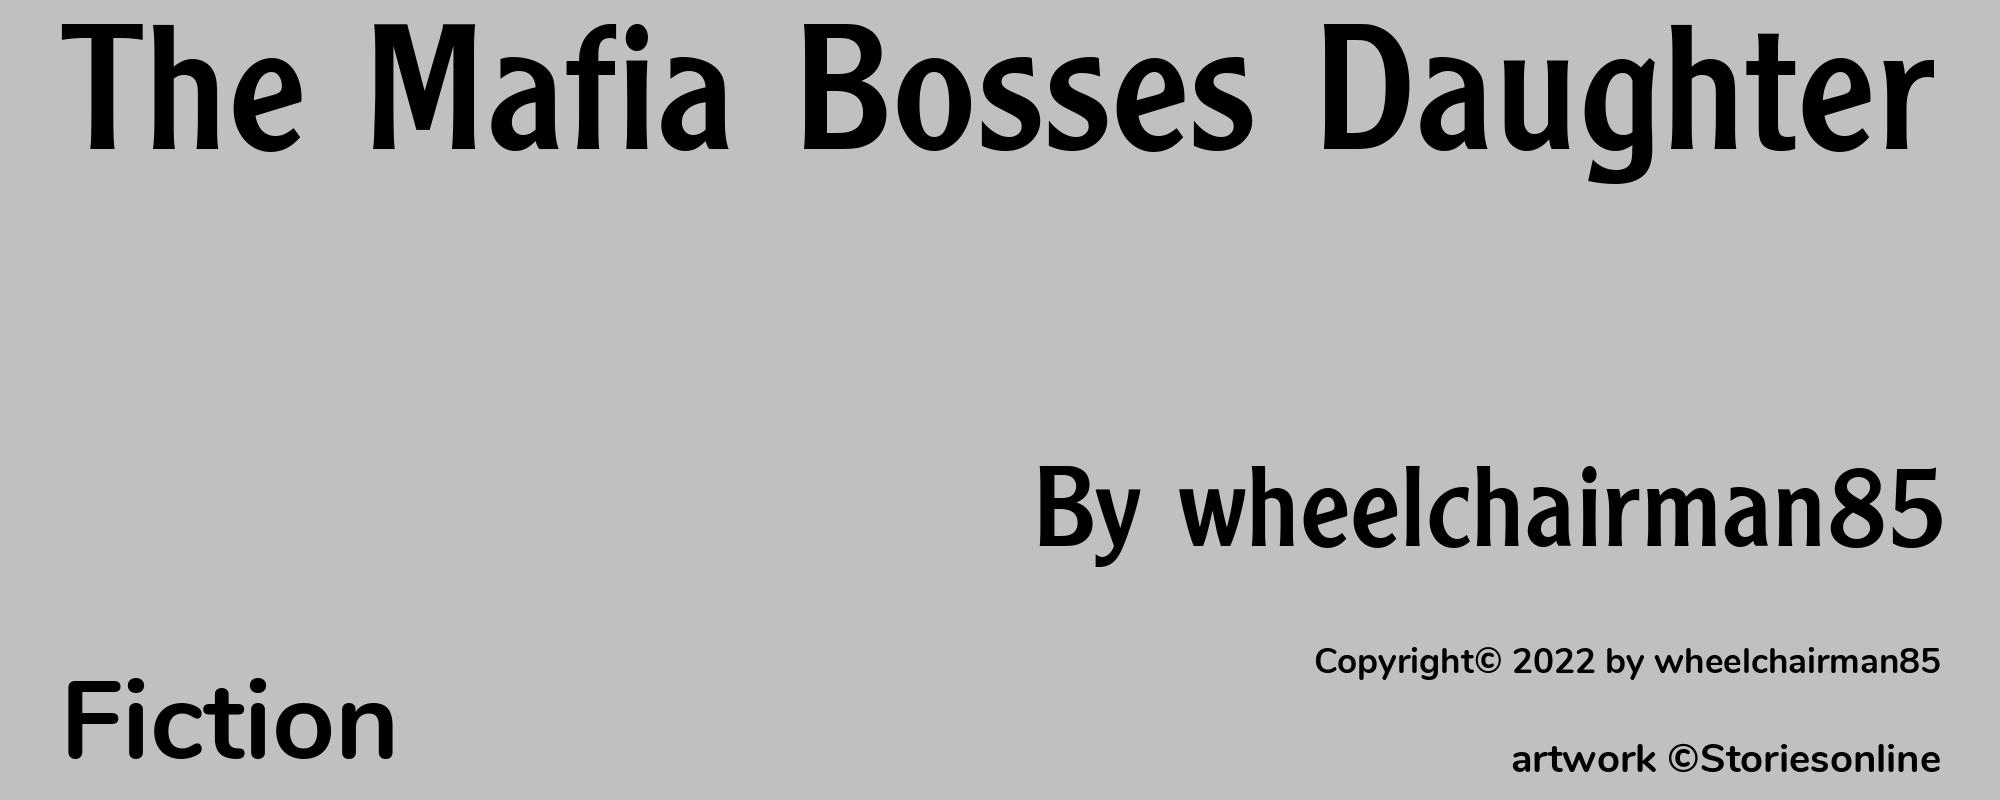 The Mafia Bosses Daughter - Cover